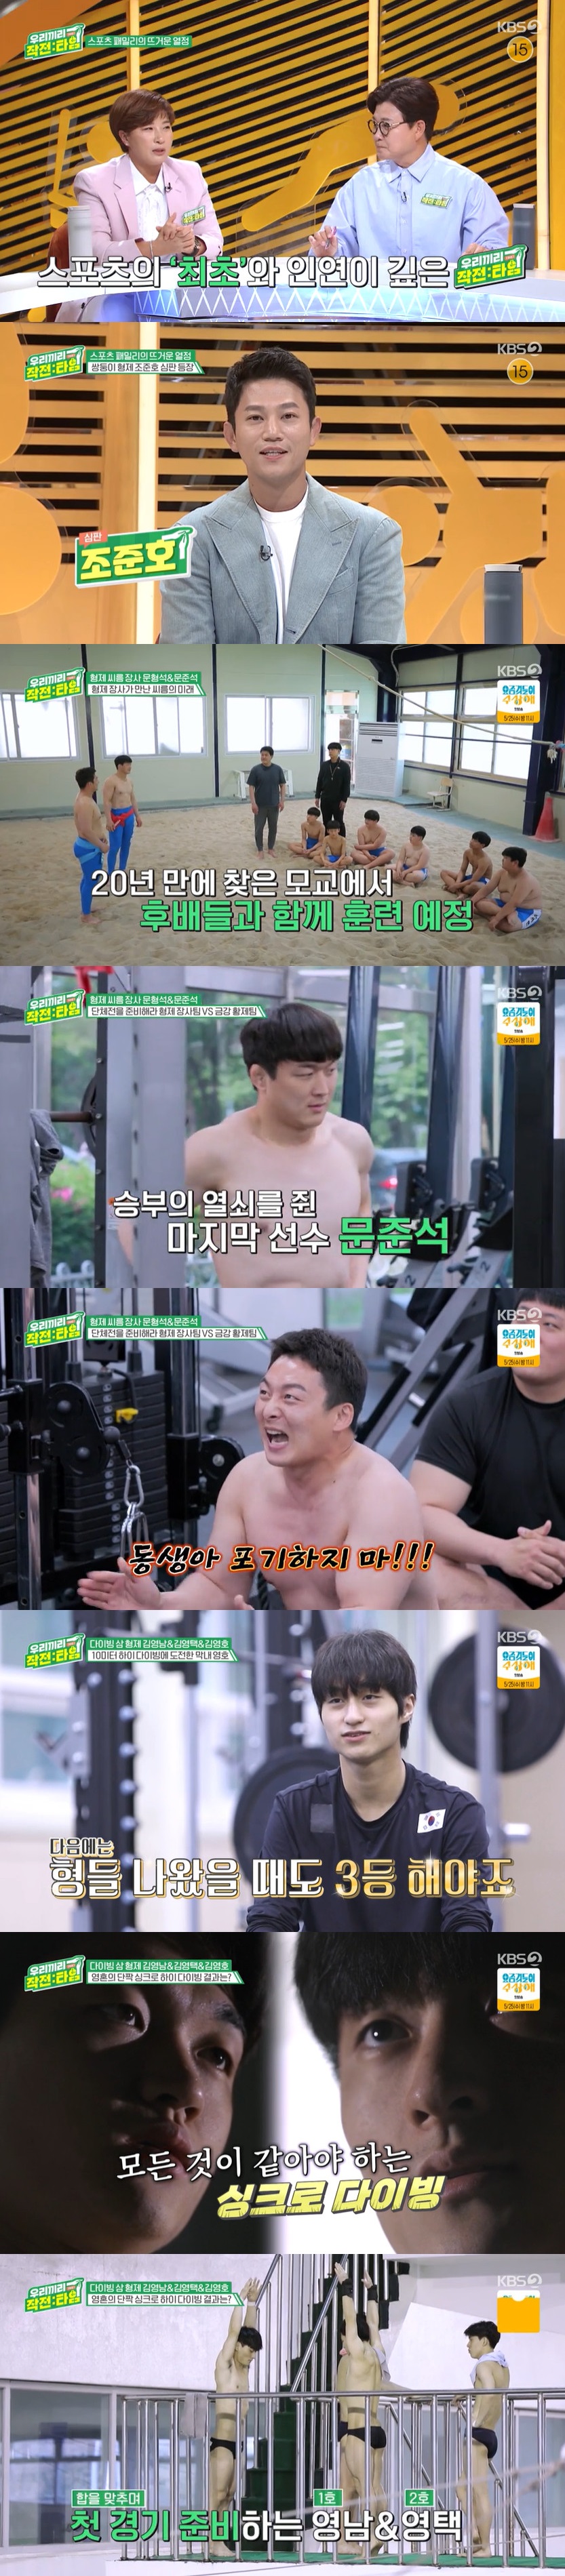 ▲ KBS2 예능 '우리끼리 작전타임' 방송 화면. 제공| KBS